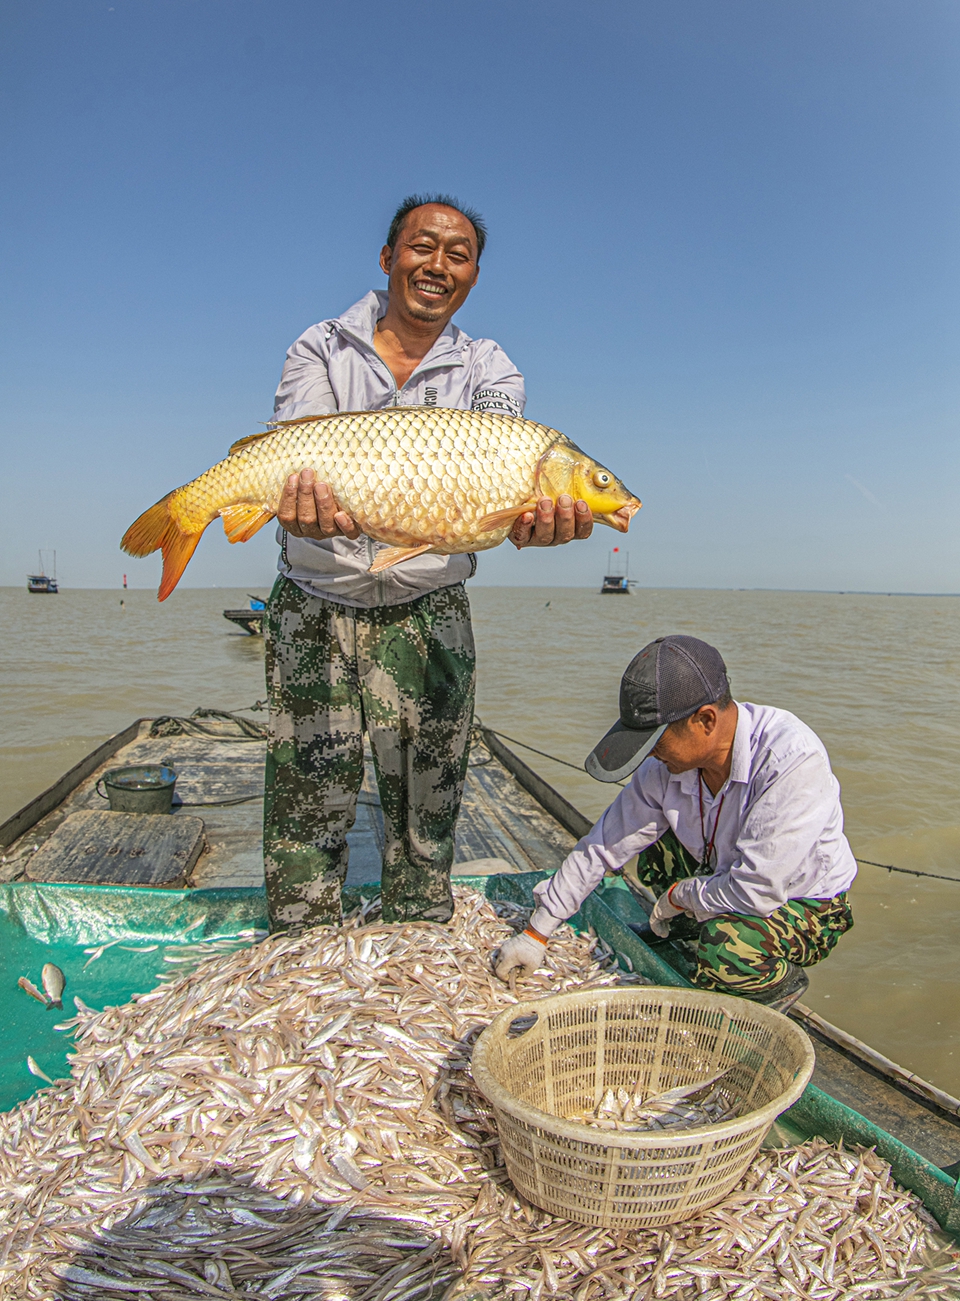 江苏泗洪大湖鱼丰收 每天能捕捞2000斤以上毛刀鱼